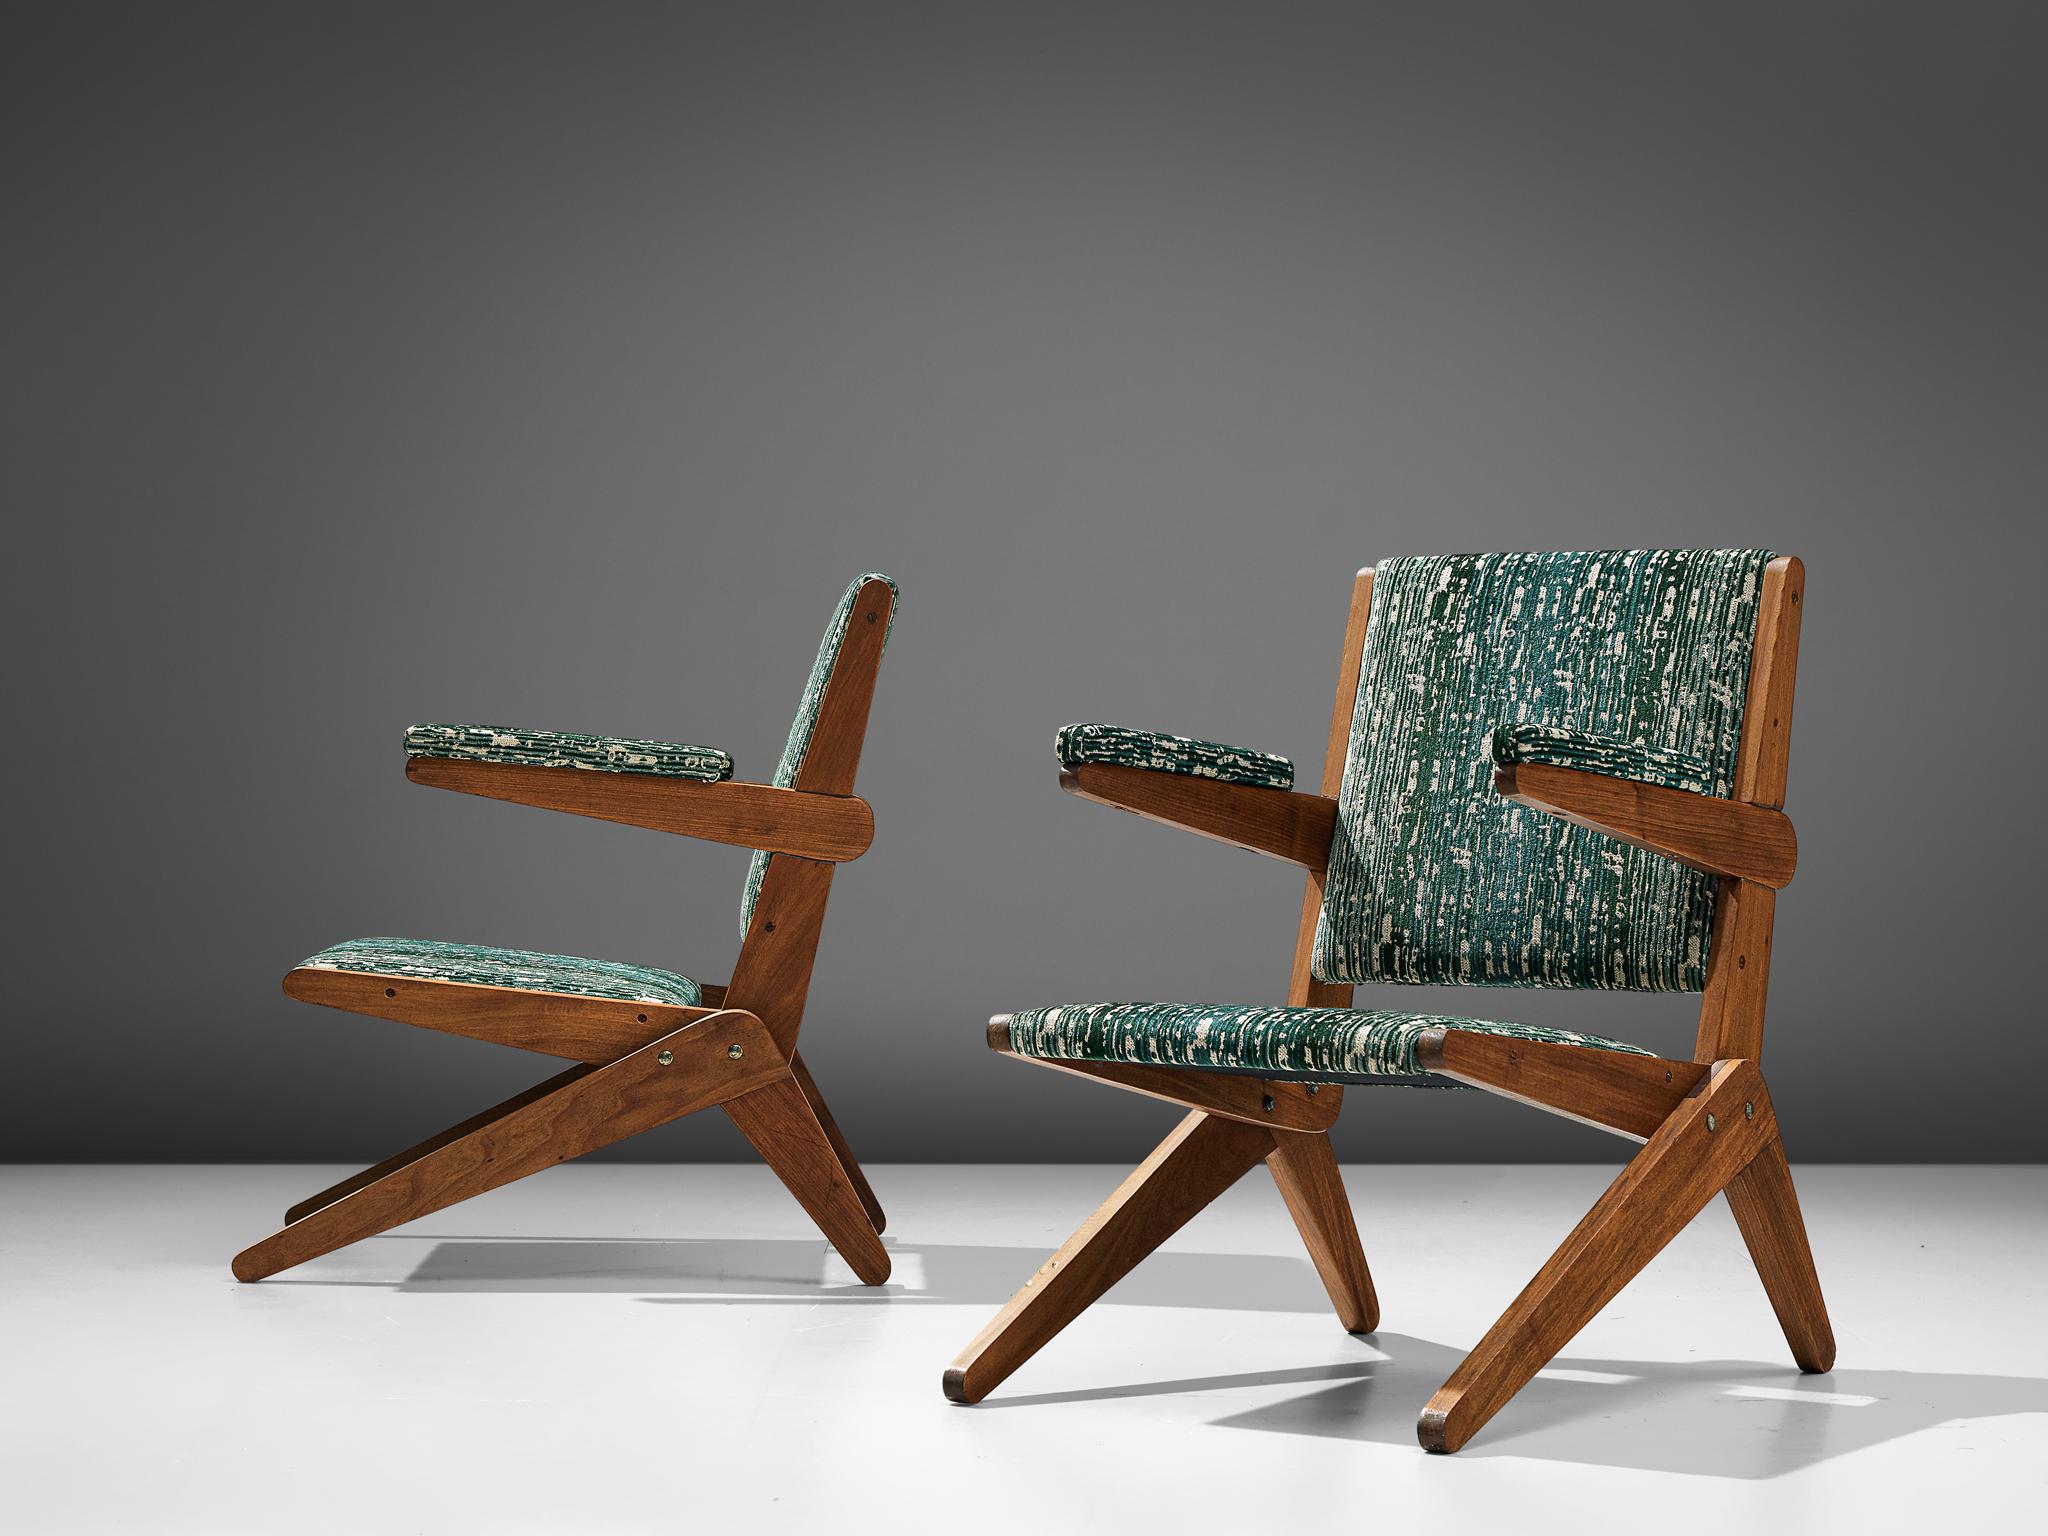 Paar Scherensessel, brasilianisches Hartholz und Stoff, Brasilien, um 1950

Diese außergewöhnlich seltenen Sessel aus Brasilien verkörpern das brasilianische Ethos der 1950er Jahre. Das Design spiegelt die Schönheit der brasilianischen Natur durch